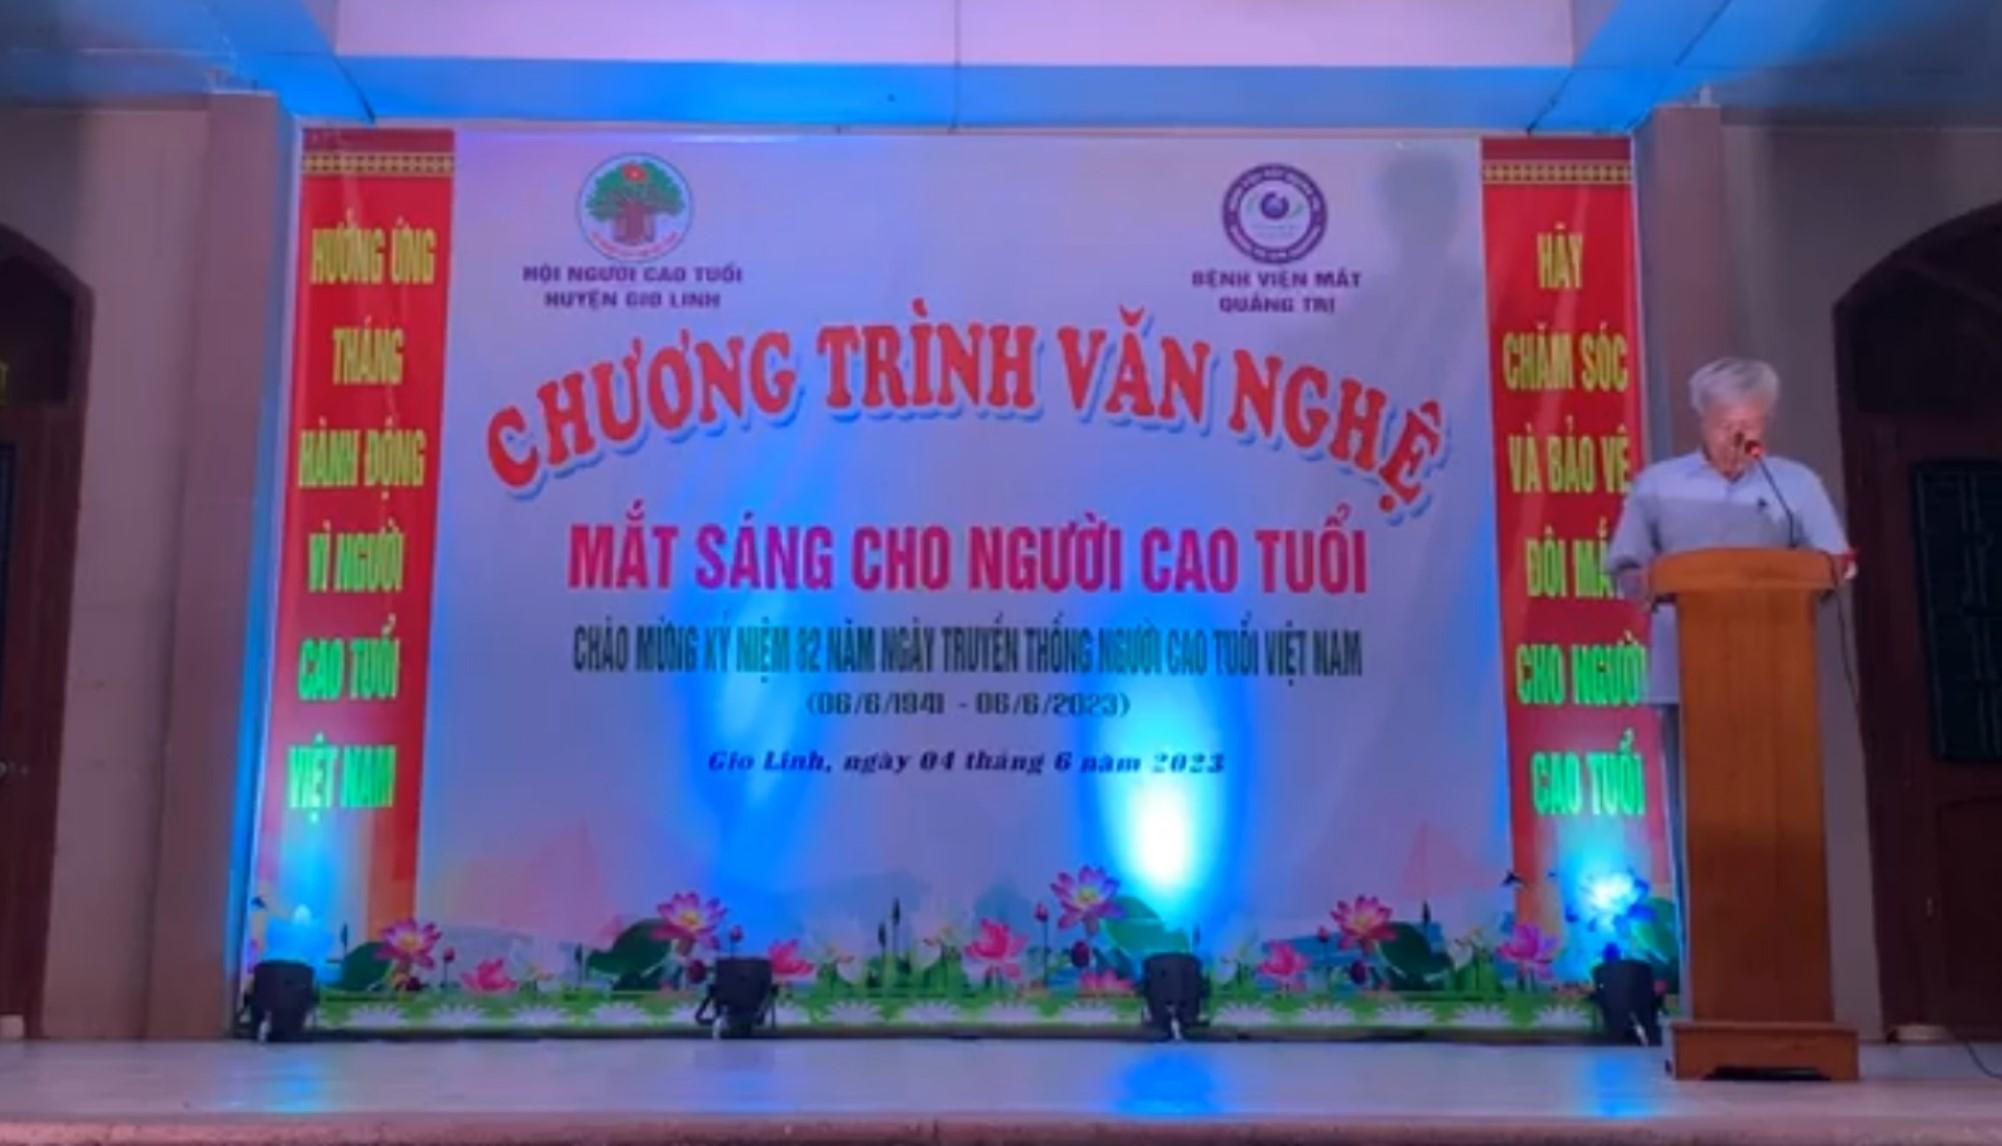 Hội Người cao tuổi huyện Gio Linh - Bệnh viện mắt tỉnh Quảng Trị tổ chức chương trình văn nghệ với...